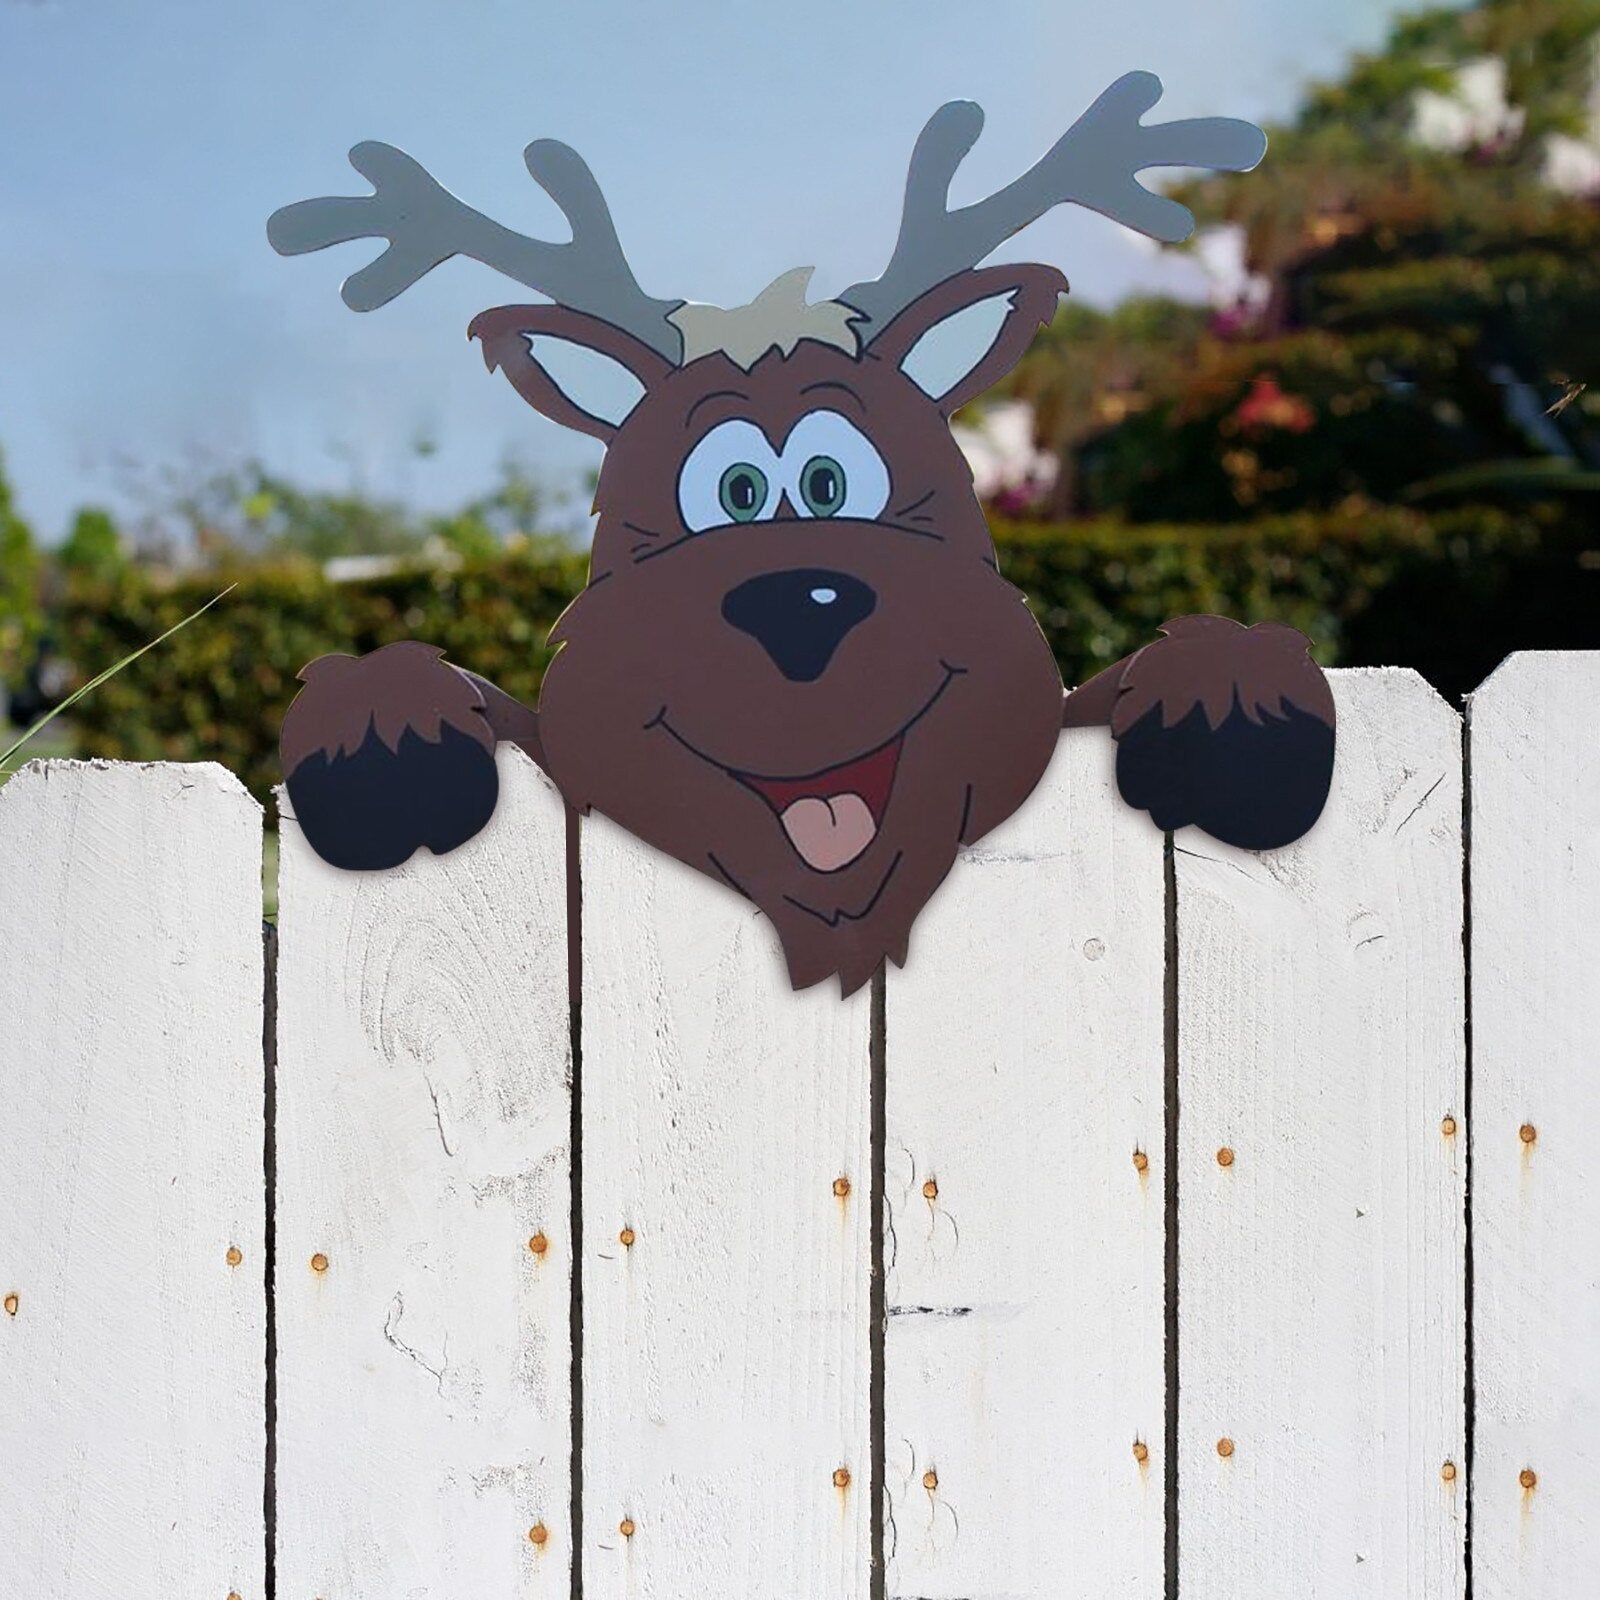 Décoration de clôture sur le thème de Noël